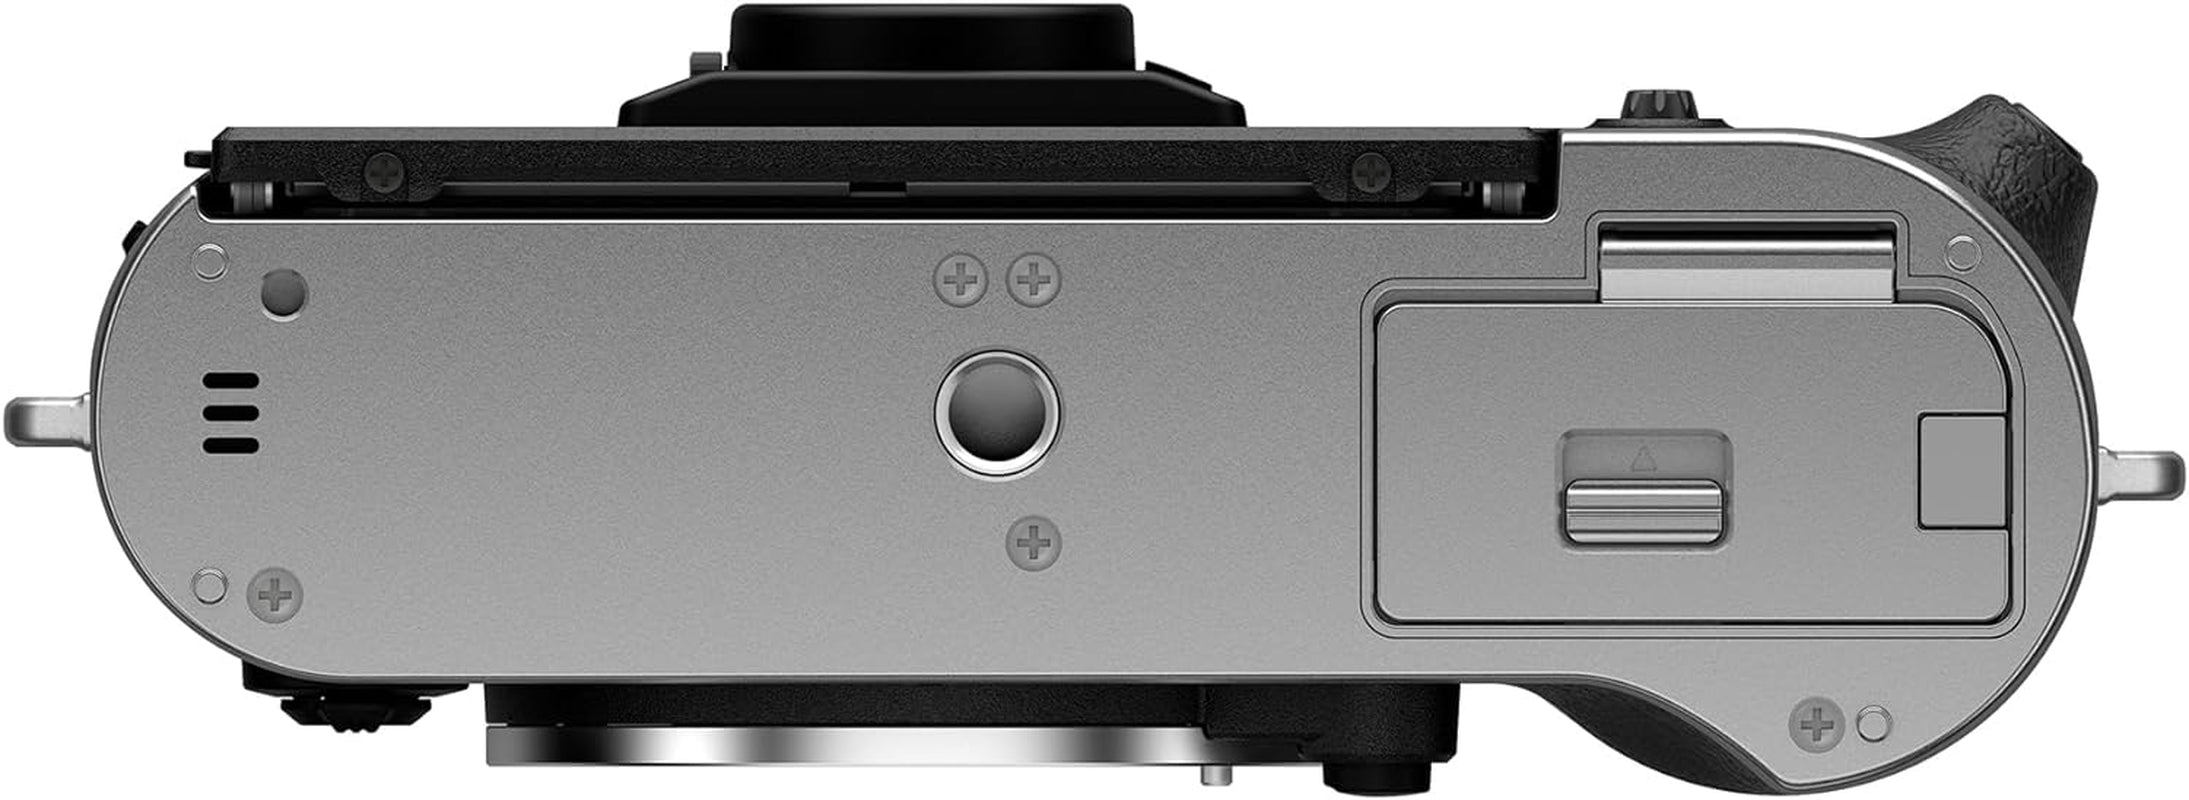 FujiFilm X-T50 Mirrorless Digital Camera